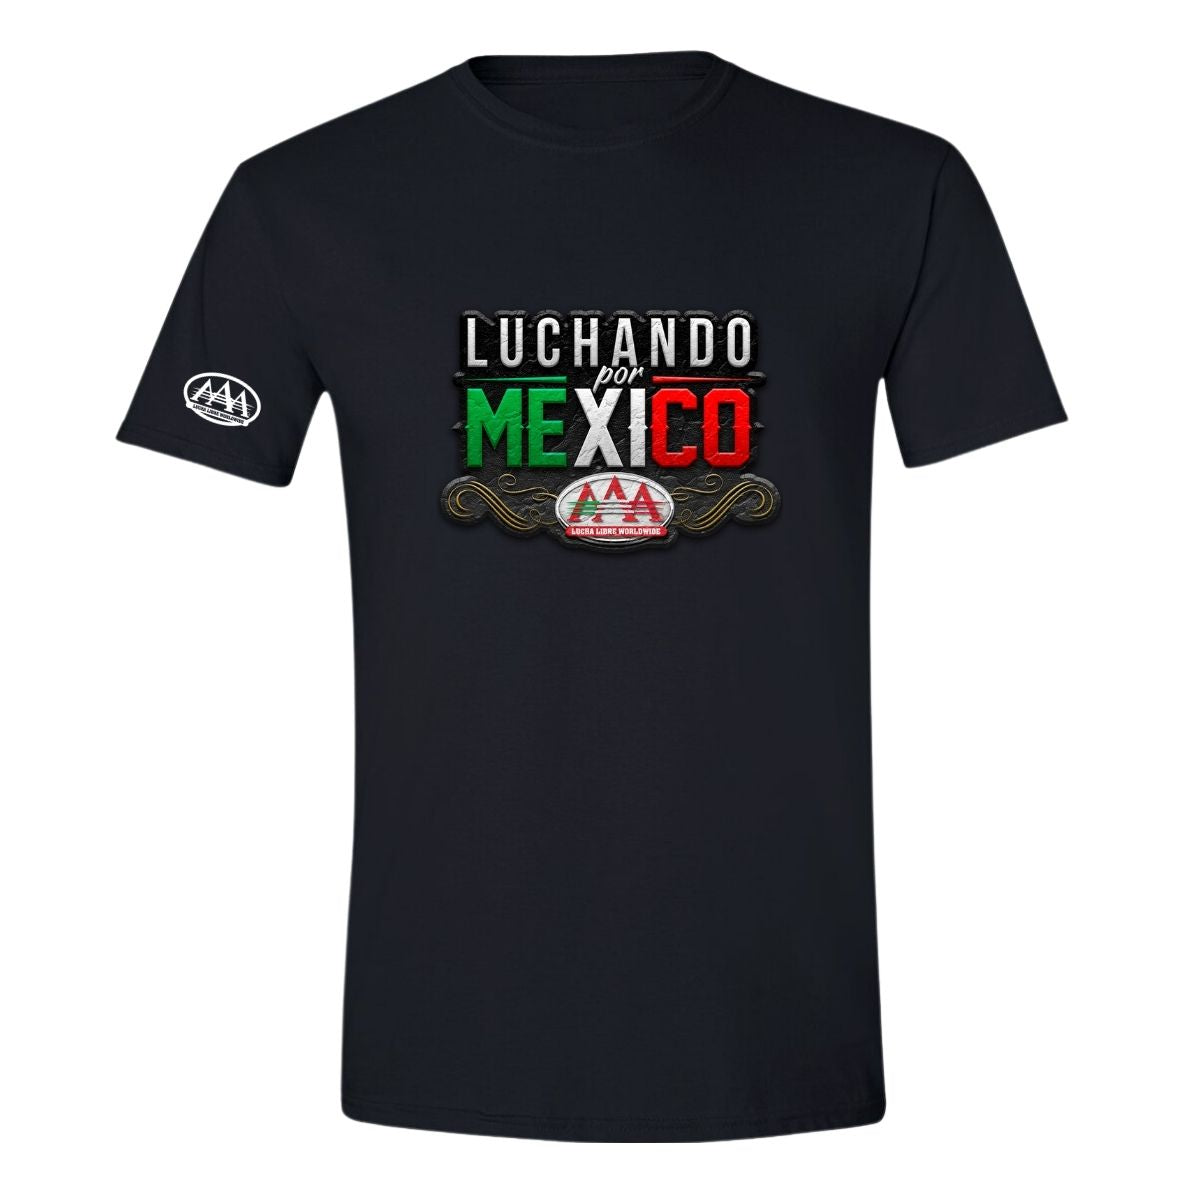 Playera Hombre Lucha Libre AAA Mexicana Luchando por México